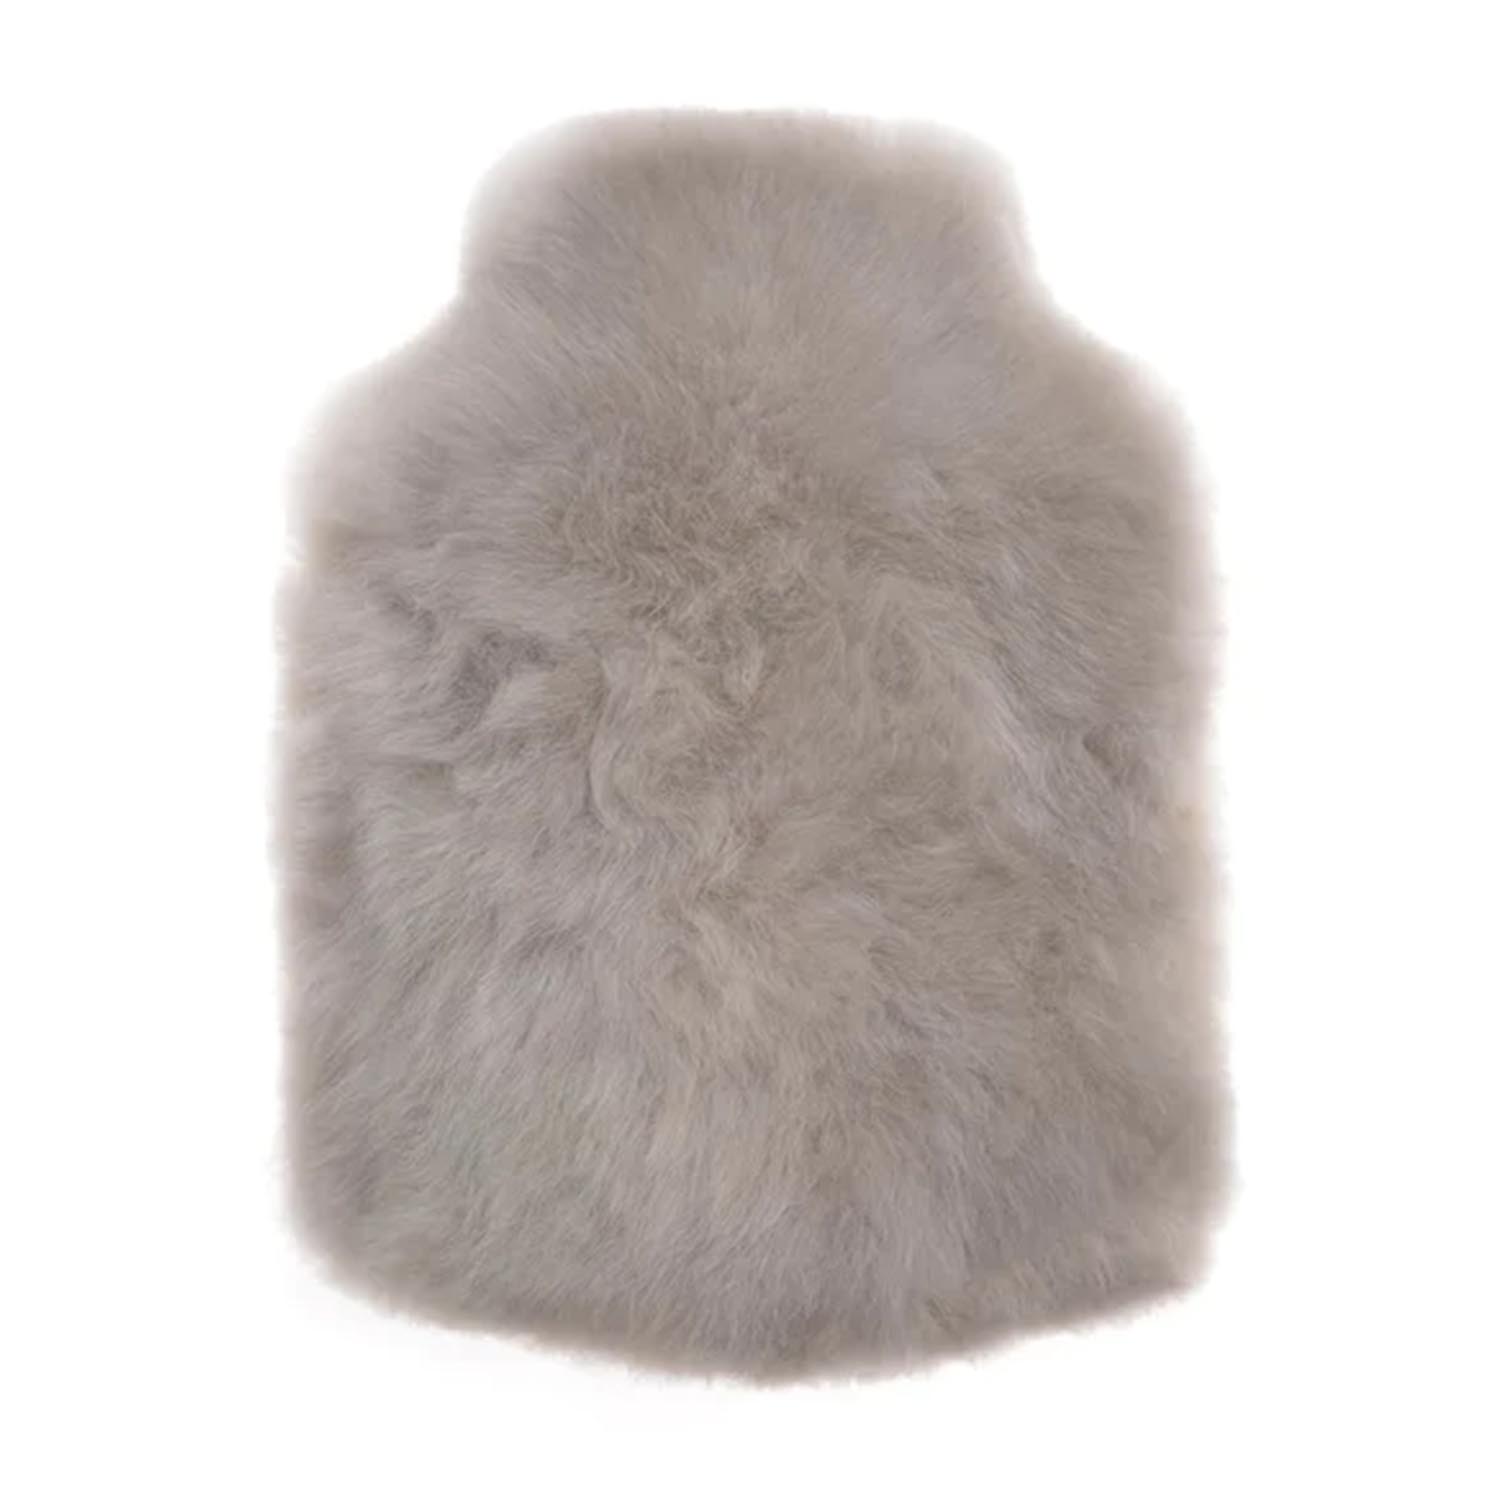 Wärmeflasche Calmo, Farbe silver grey, Grösse regular (1,8l) von Weich Couture Alpaca